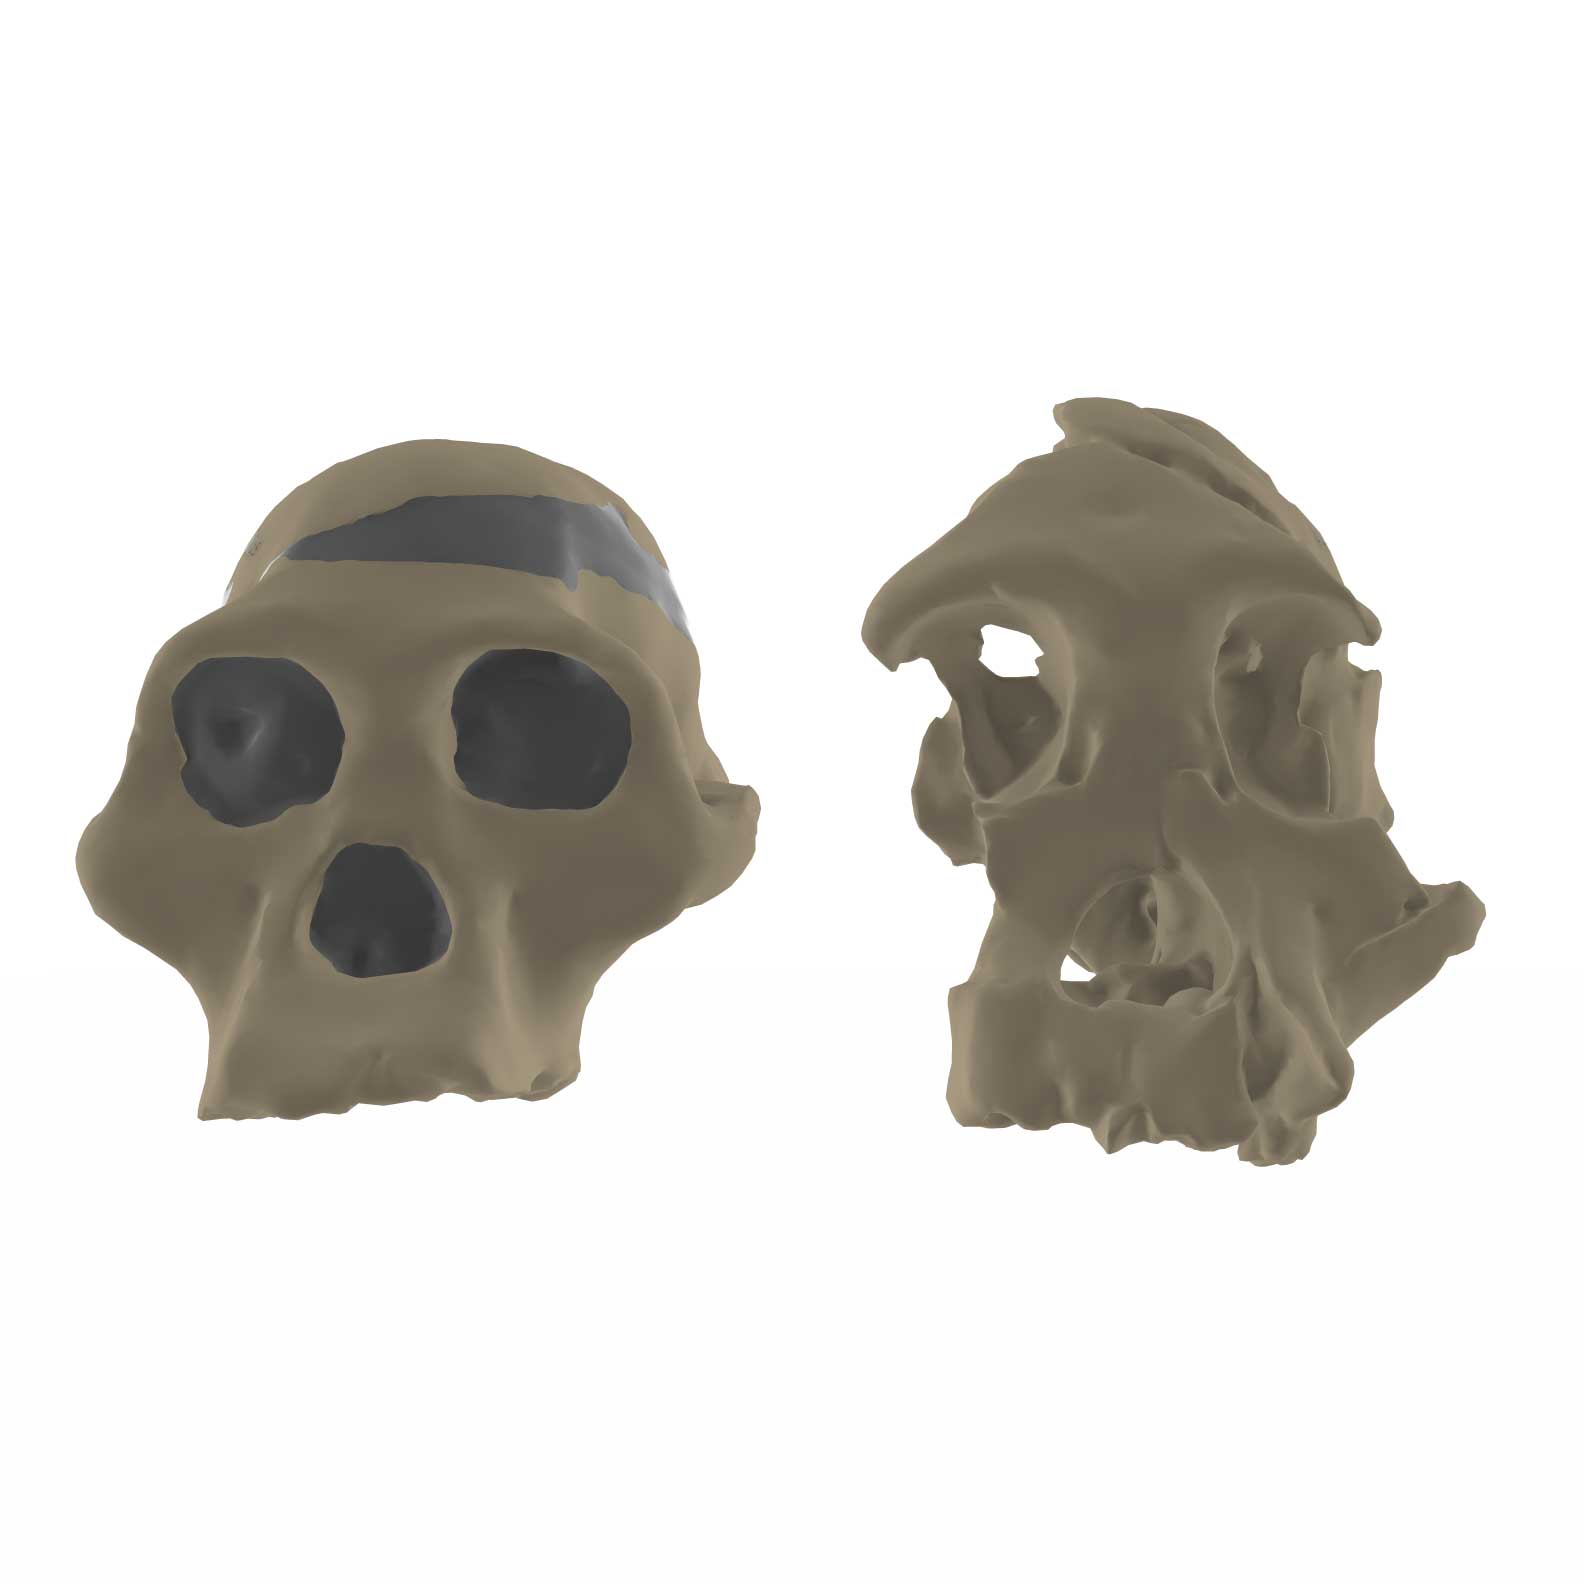 Sts 5 skull next to Stw 505 skull